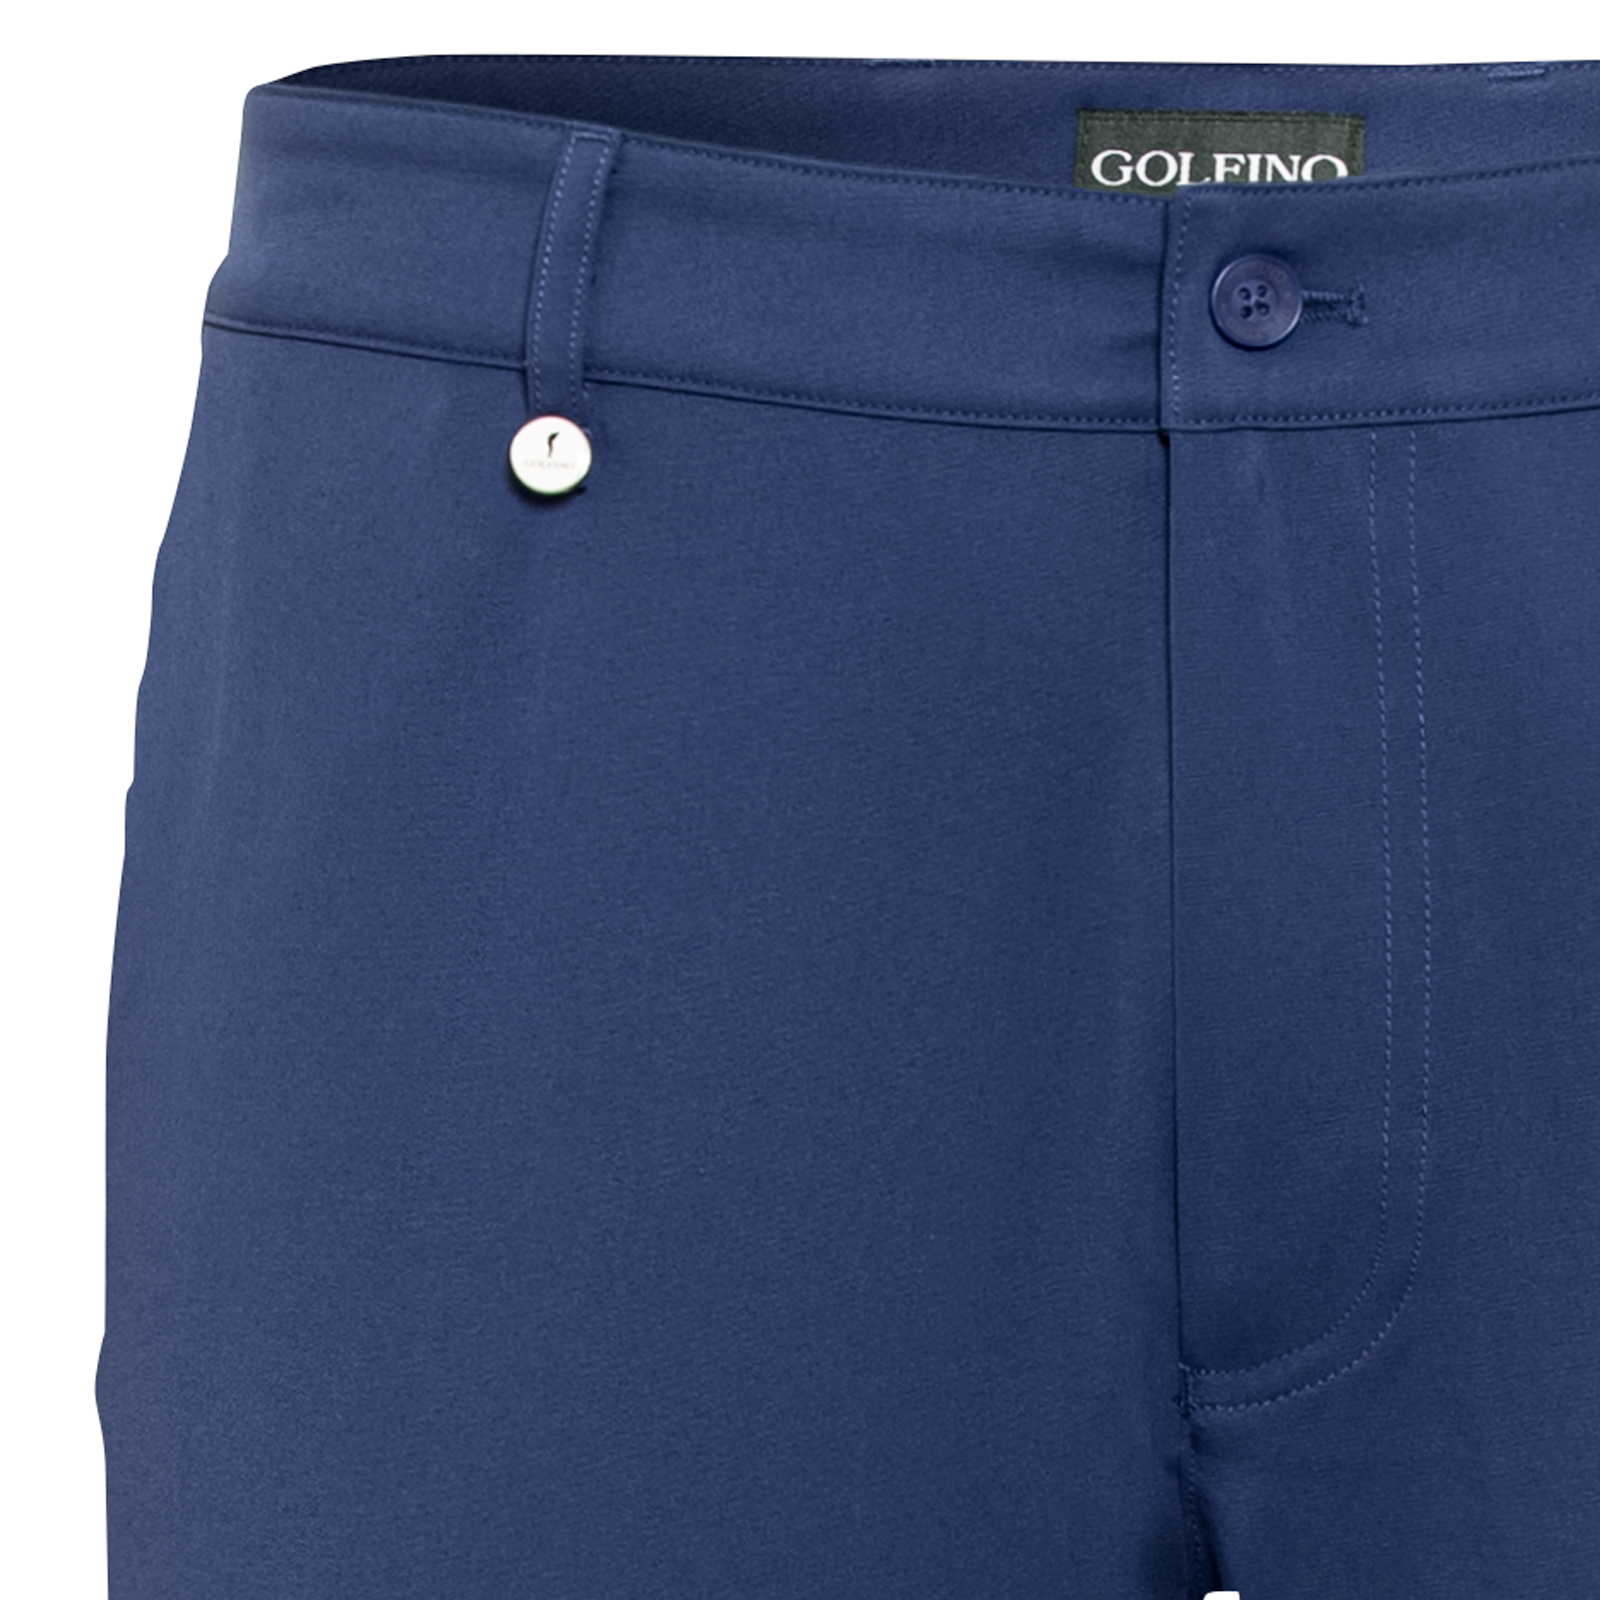 Pantalones de golf con corte ajustado y secado rápido para hombre